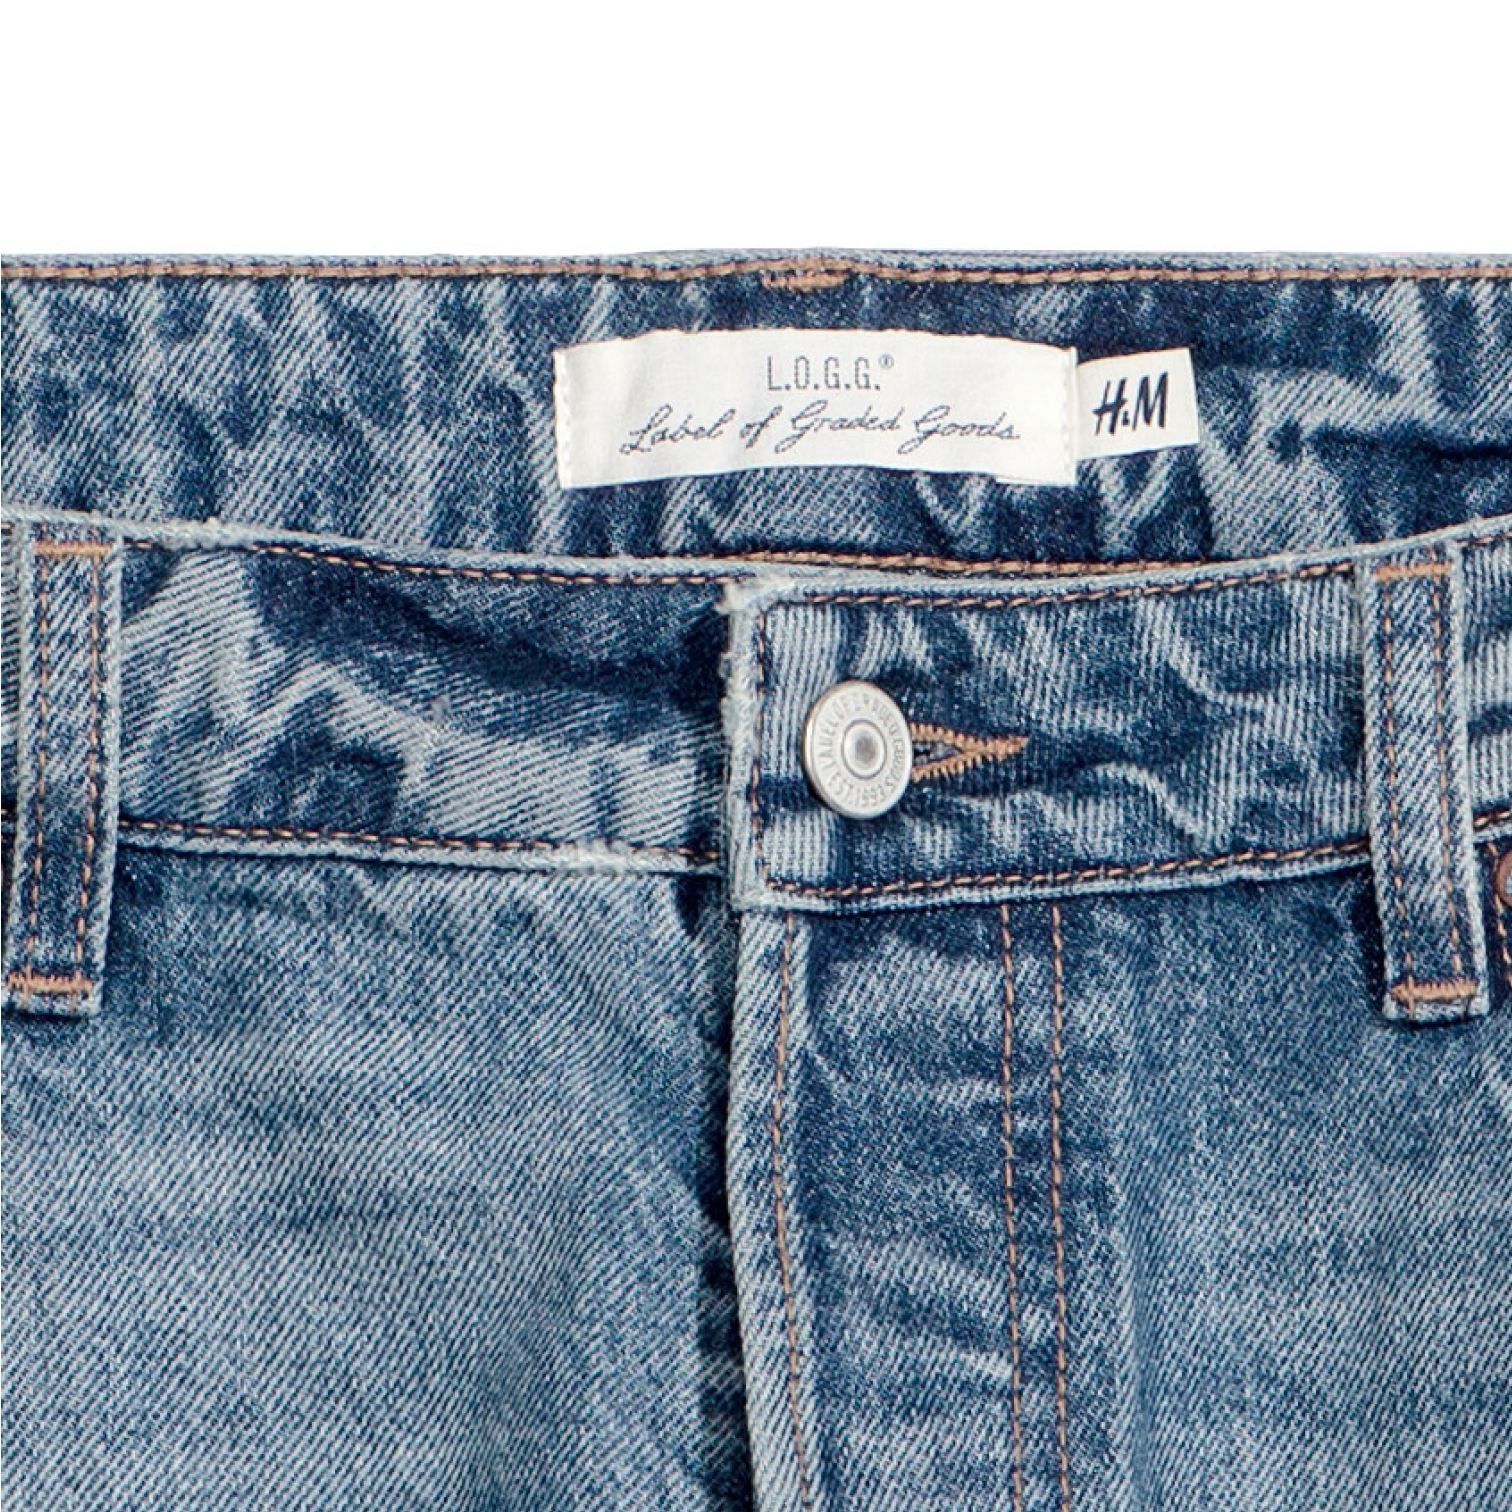 شلوار جین مردانه اچ اند ام مدل 00357 -  - 3